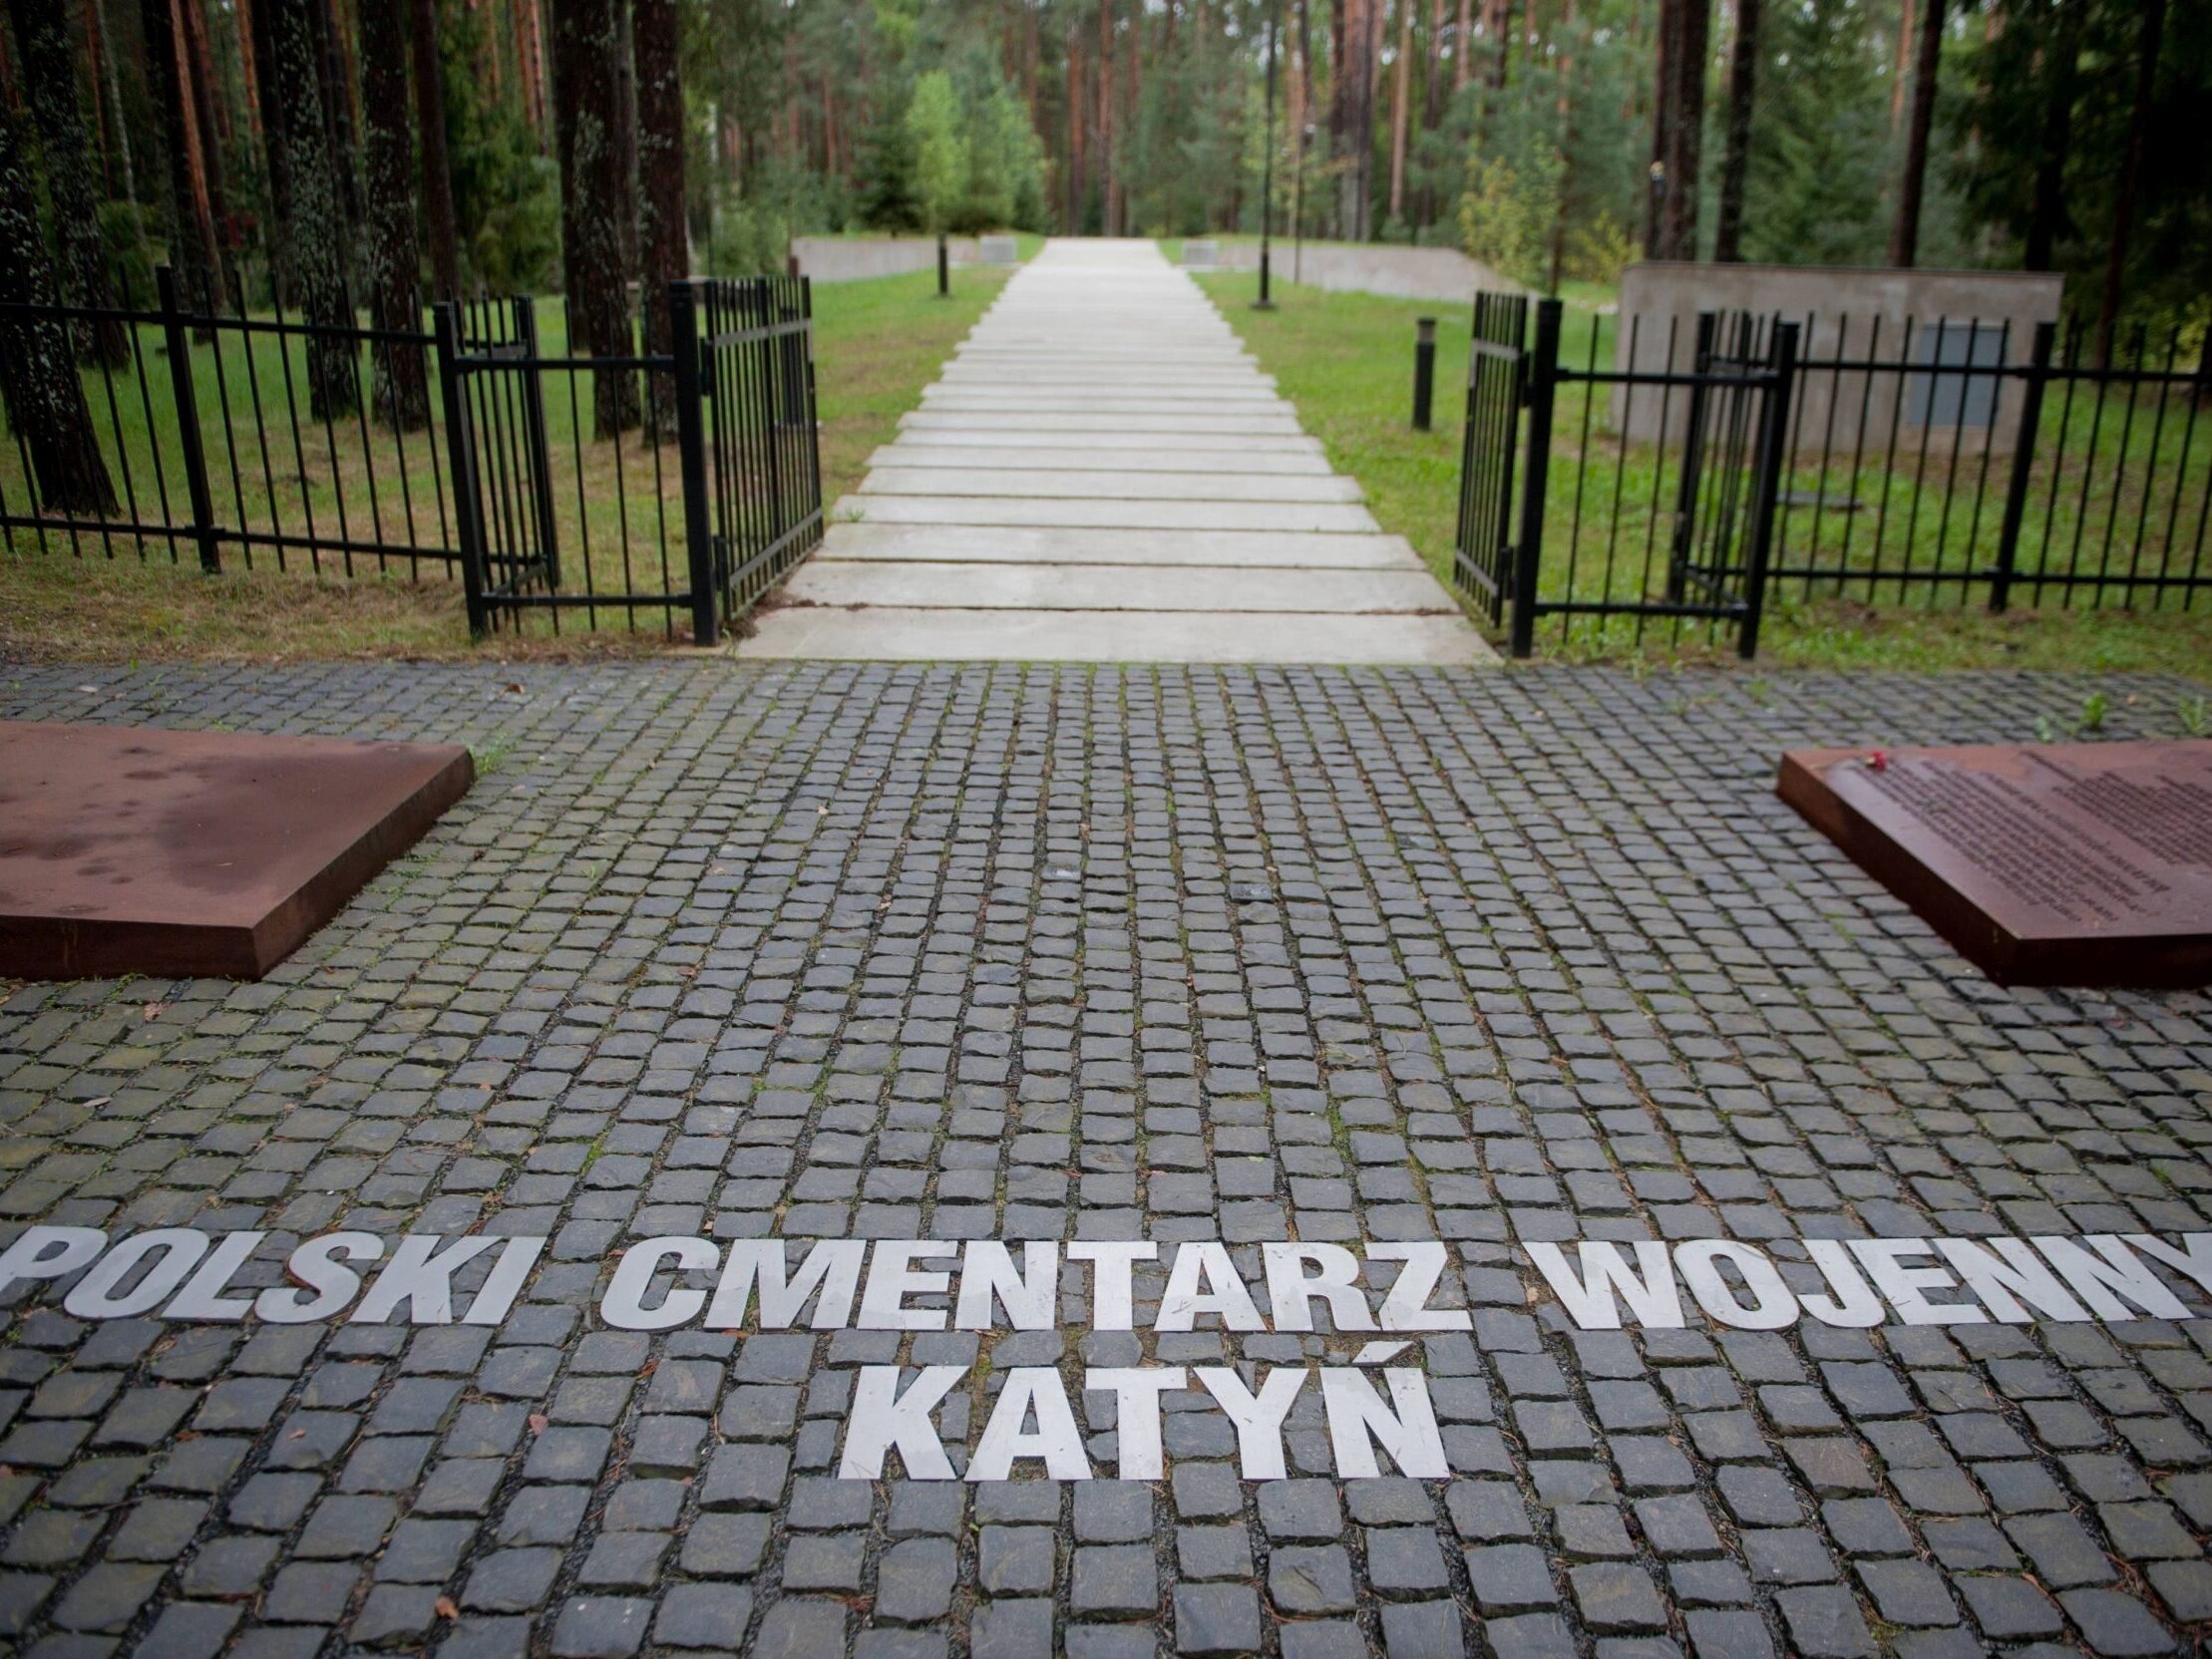 Polski Cmentarz Wojenny w Katyniu. Fot. Damian Burzykowski. Źródło: Newspix.pl 